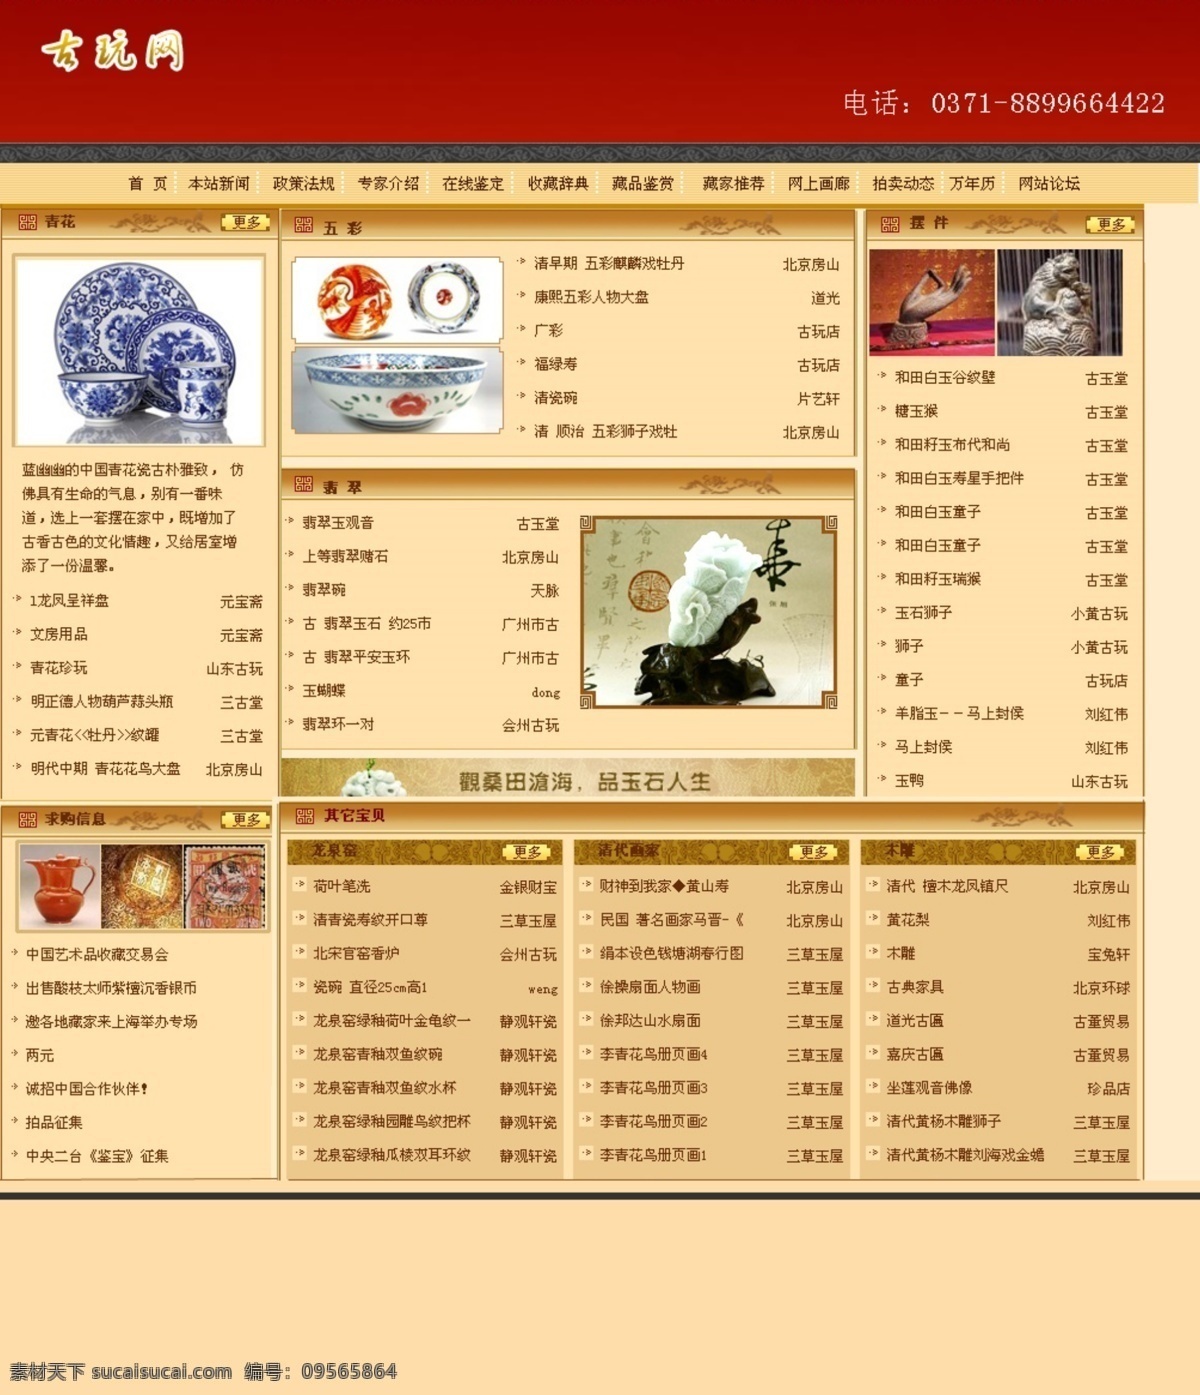 古玩网站模板 古色网站模板 玉器网站模板 古董网站模板 收藏网站模板 web 界面设计 中文模板